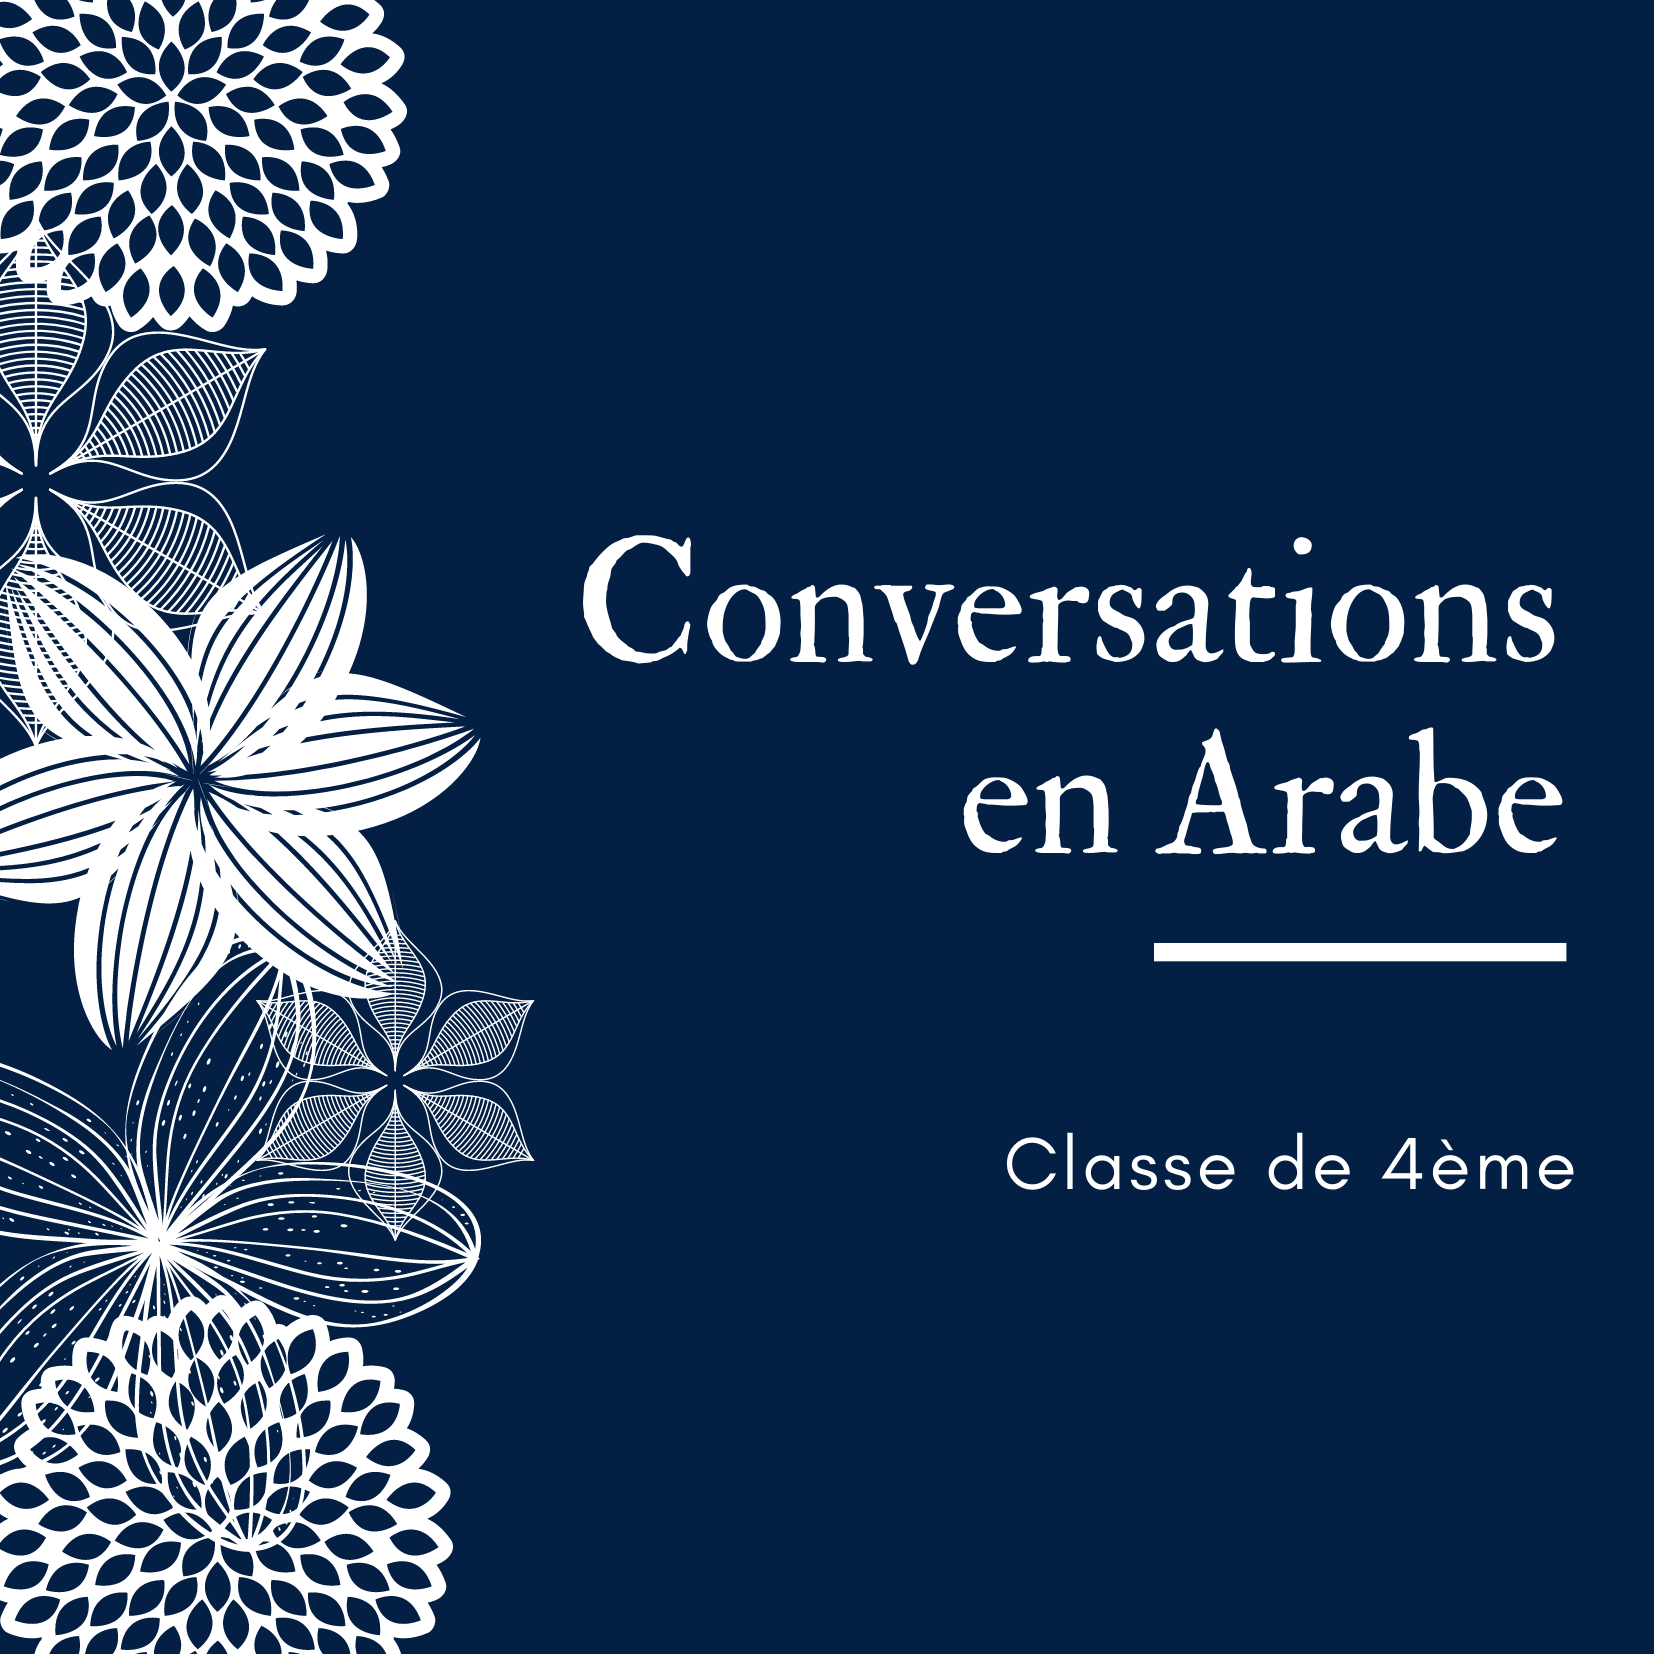 Des rencontres virtuelles en arabe